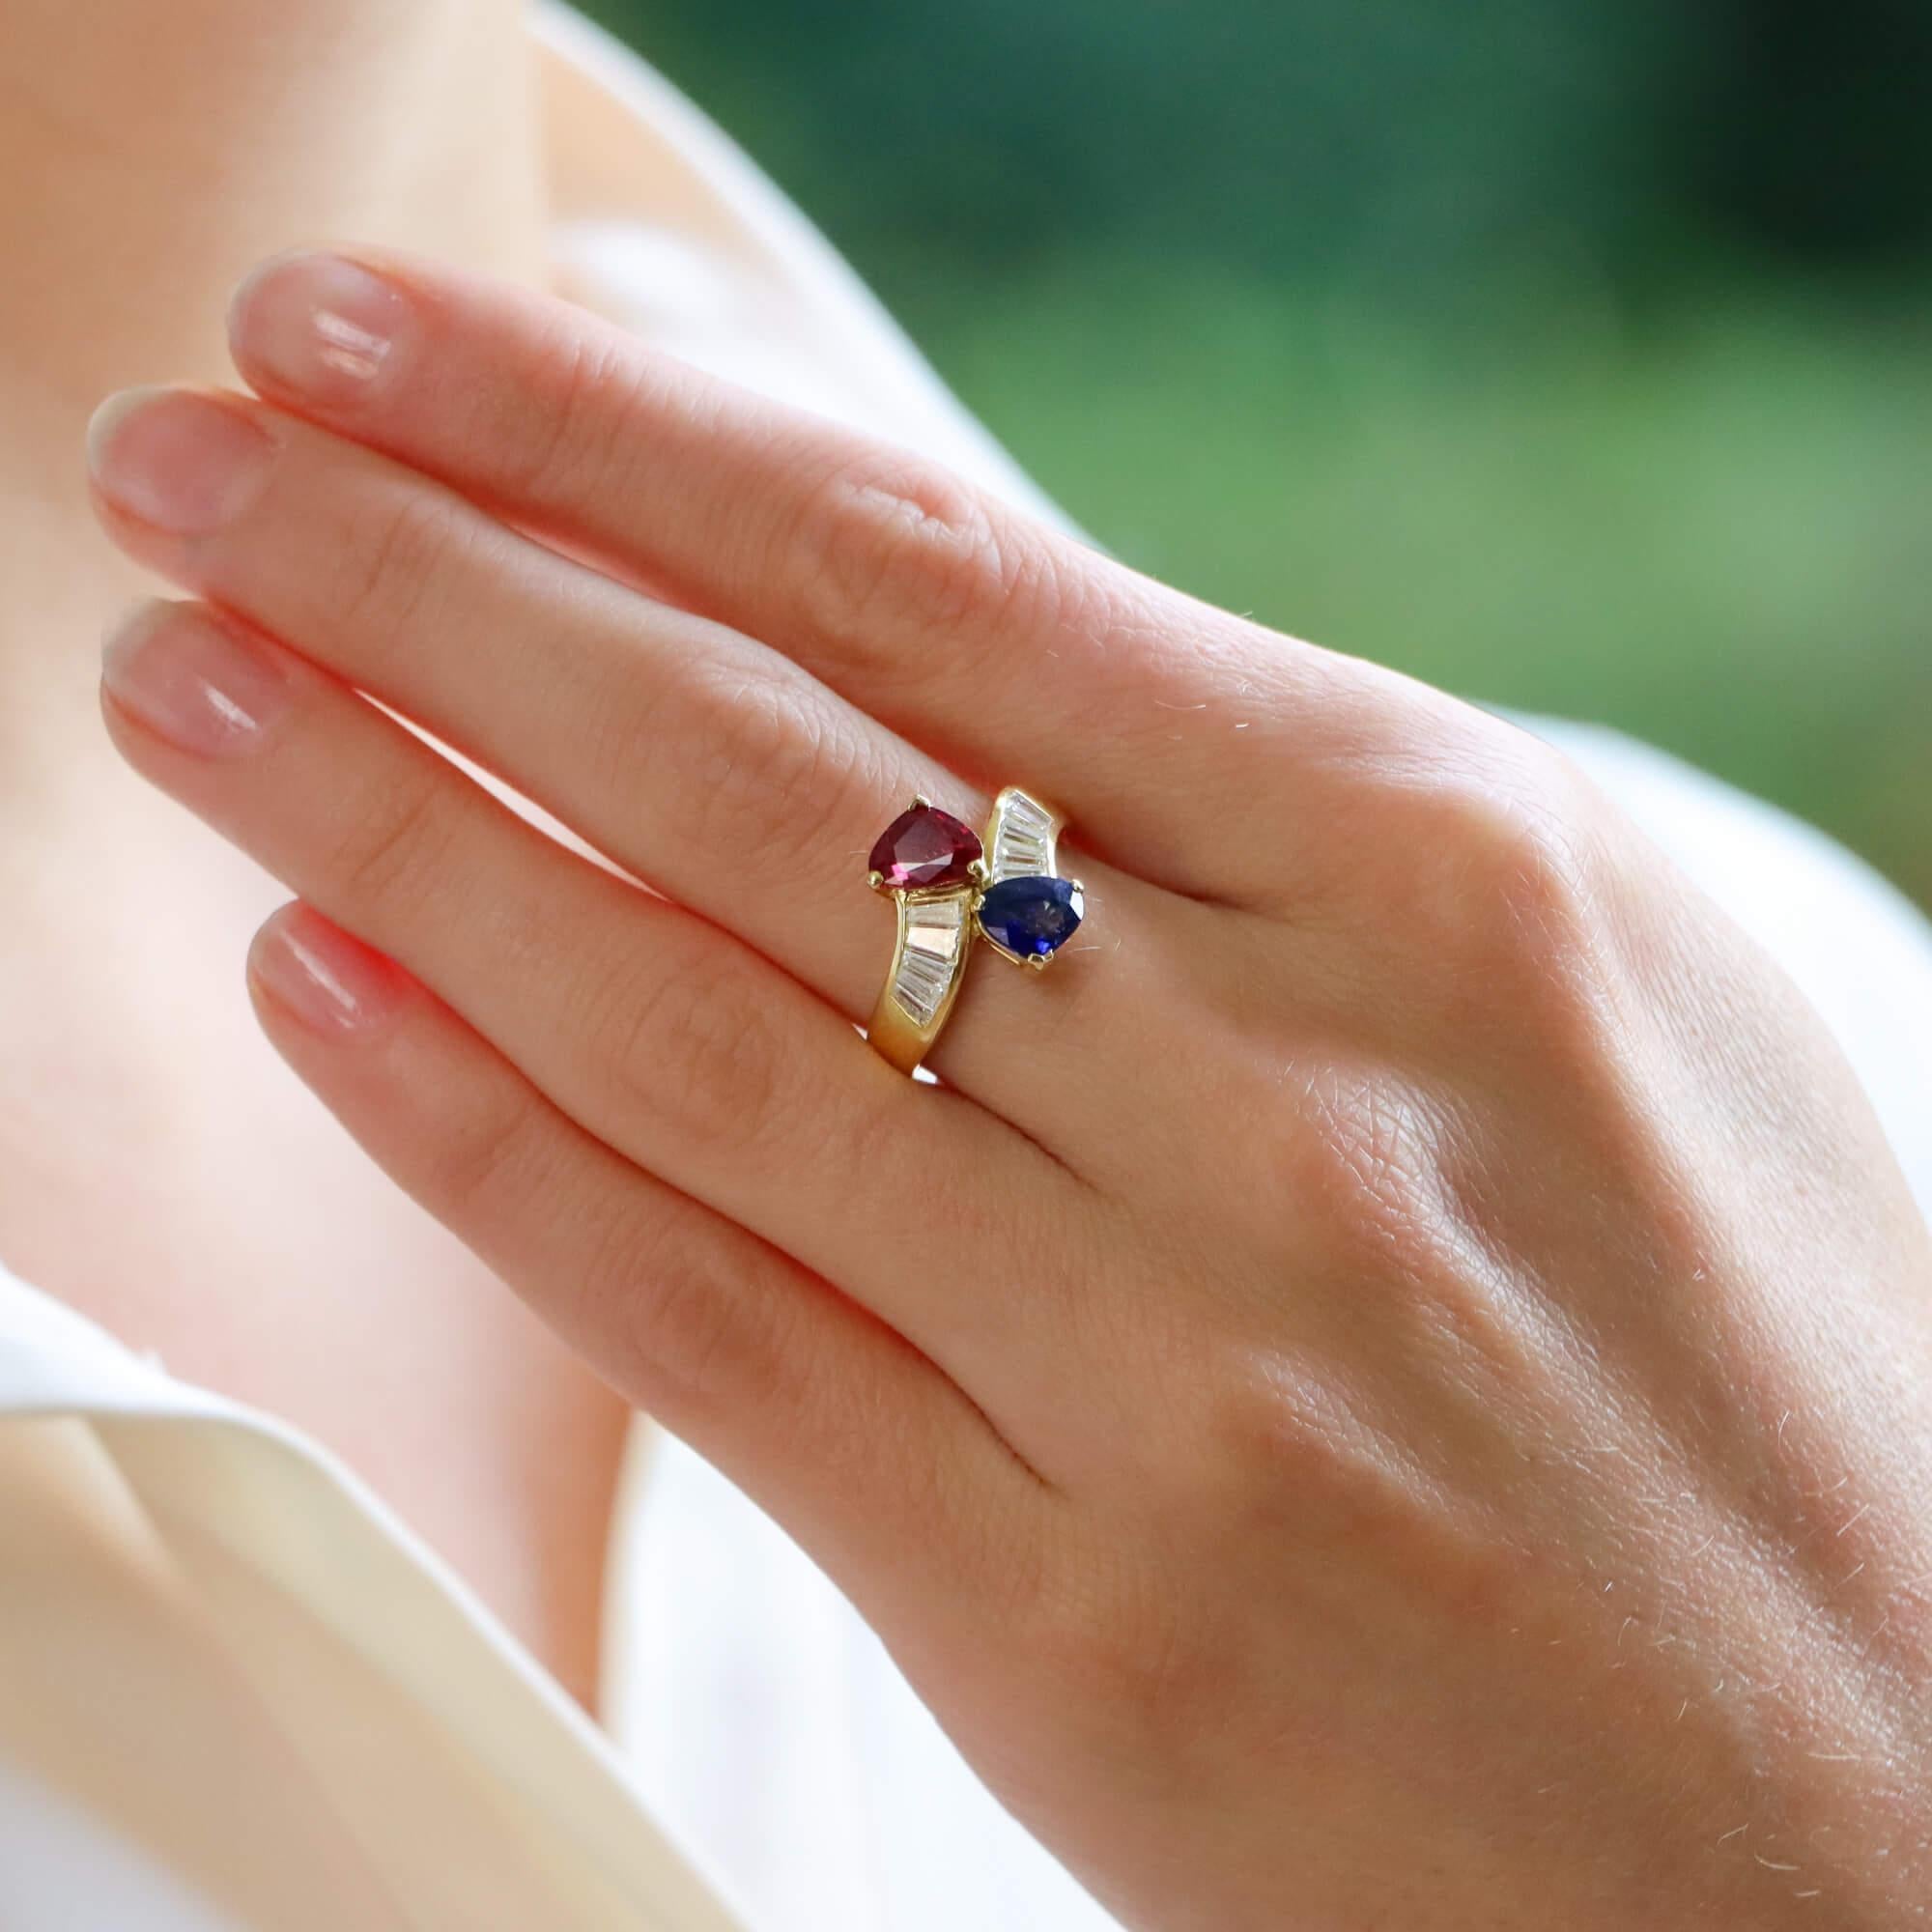 Ein schöner Vintage-Rubin, Saphir und Diamant toi-et-moi Crossover-Ring in 18 Karat Gelbgold gesetzt.

Der Ausdruck 